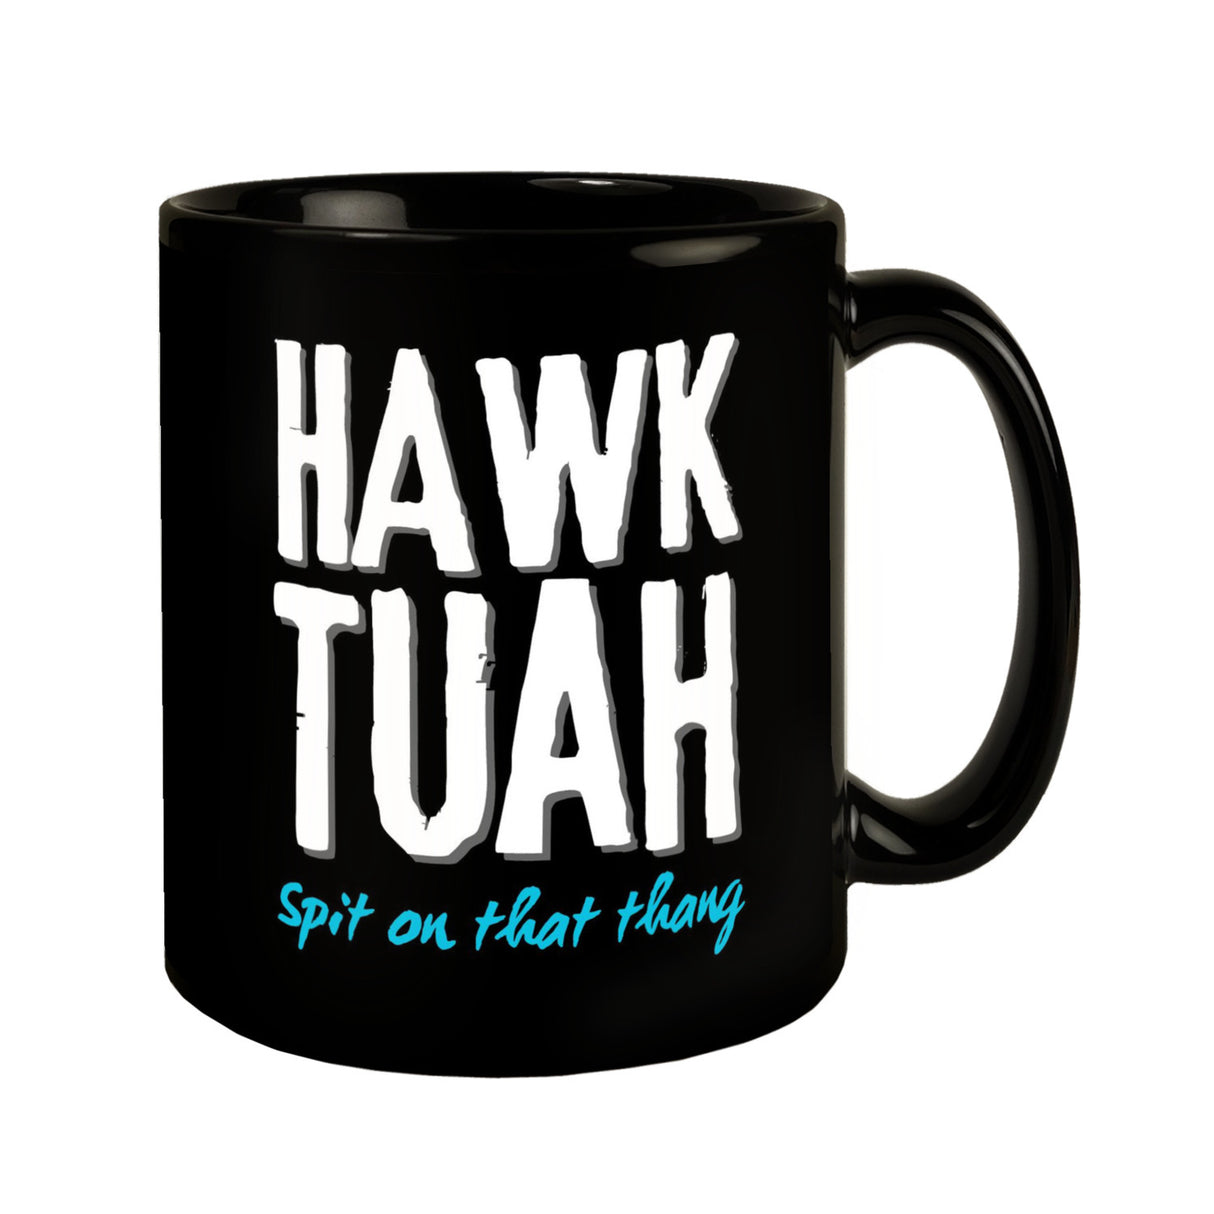 Hawk Tuah Tasse in Schwarz mit Spruch Spit on that thang